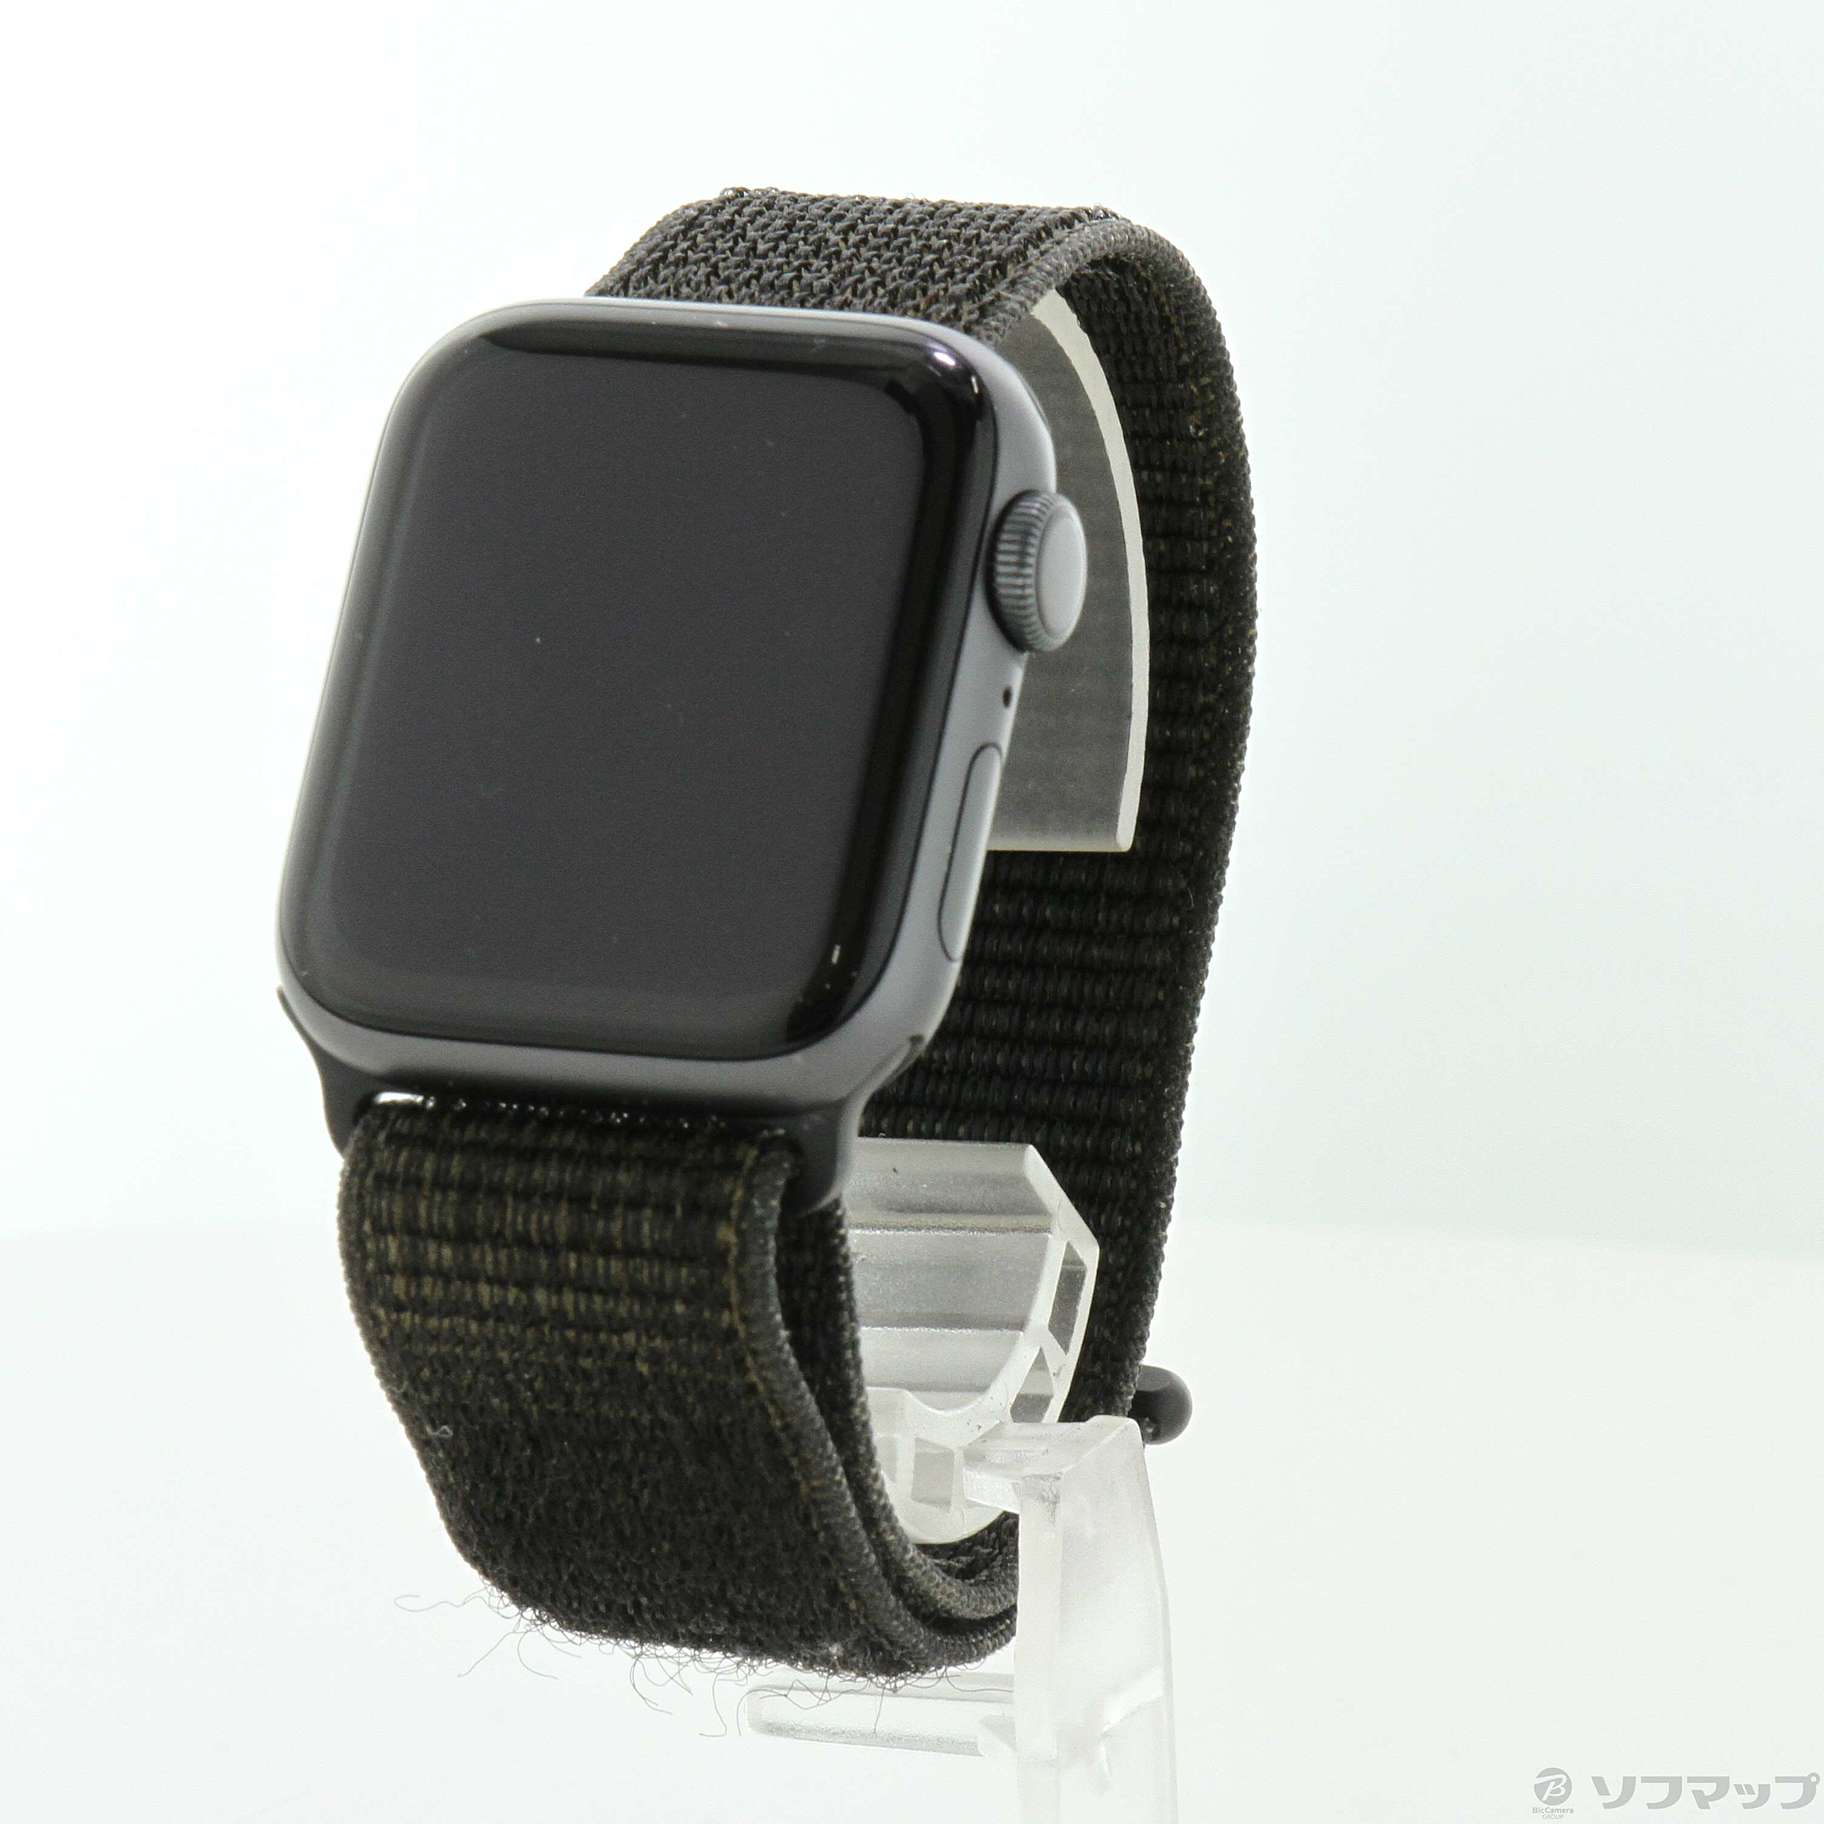 Apple Watch series4 Nike+